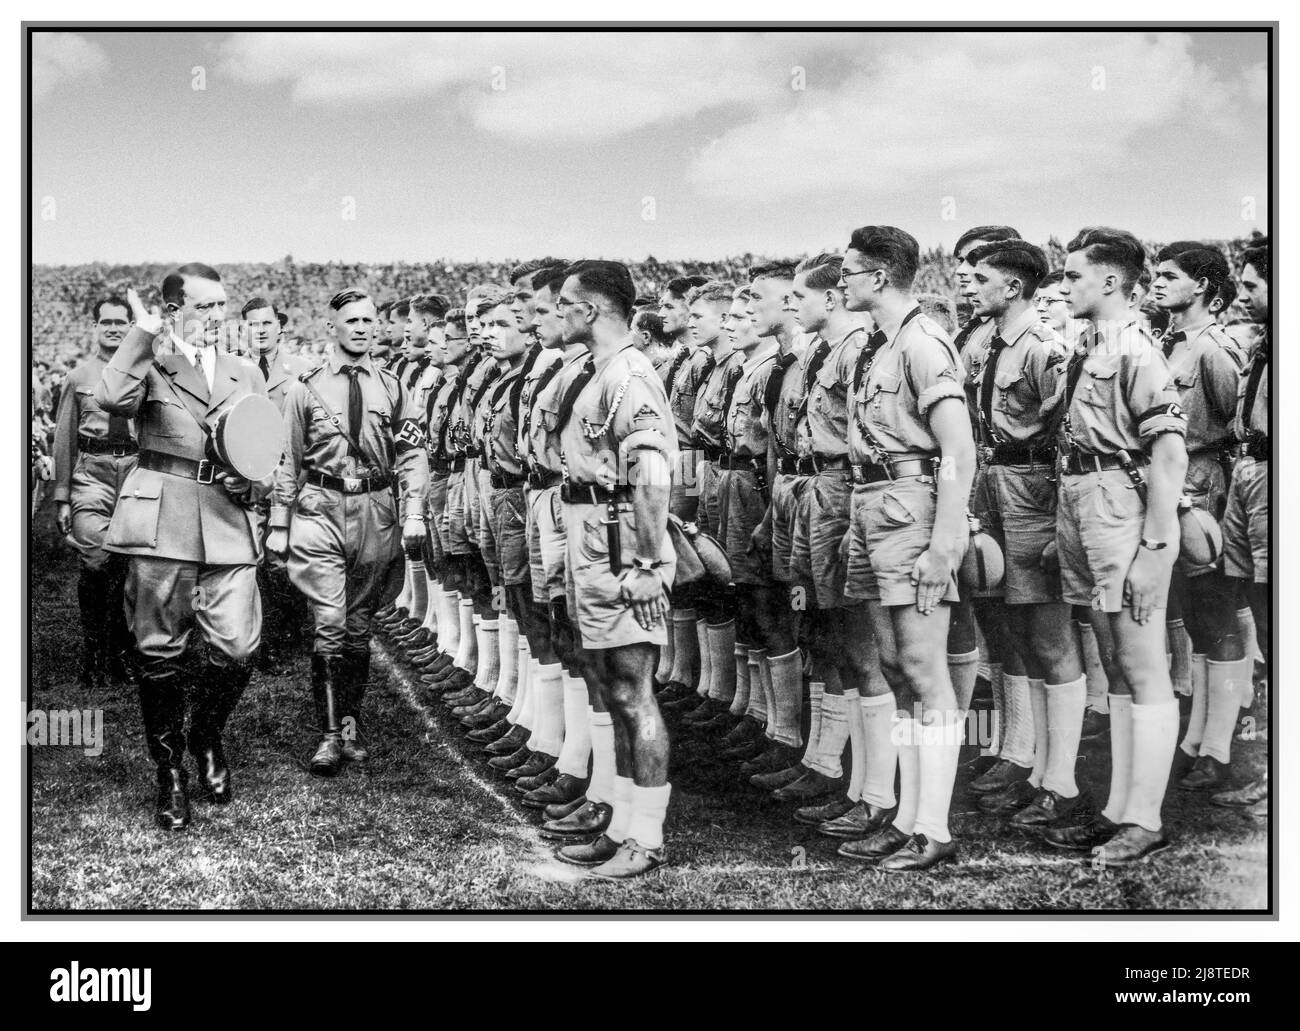 HITLER GIOVANE Adolf Hitler saluto una giovane gazzetta di Hitler (Hitlerjugend) di giovani uomini in uniforme (pantaloncini, magliette marroni, ecc.) durante il Rally di Norimberga 1935, il Congresso del Partito nazista (NSDAP) del 7th che si è tenuto a Norimberga (Nürnberg), 10–16 settembre. Hitler è accompagnato da Rudolf Hess, Baldur von Schirach, etc Germania nazista 1935 Reichsparteitag der NSDAP; Nürnberg, 10.–16. Settembre 1935; Rudolf Heß, Adolf Hitler, Baldur von Schirach, Hitlerjugend Foto Stock